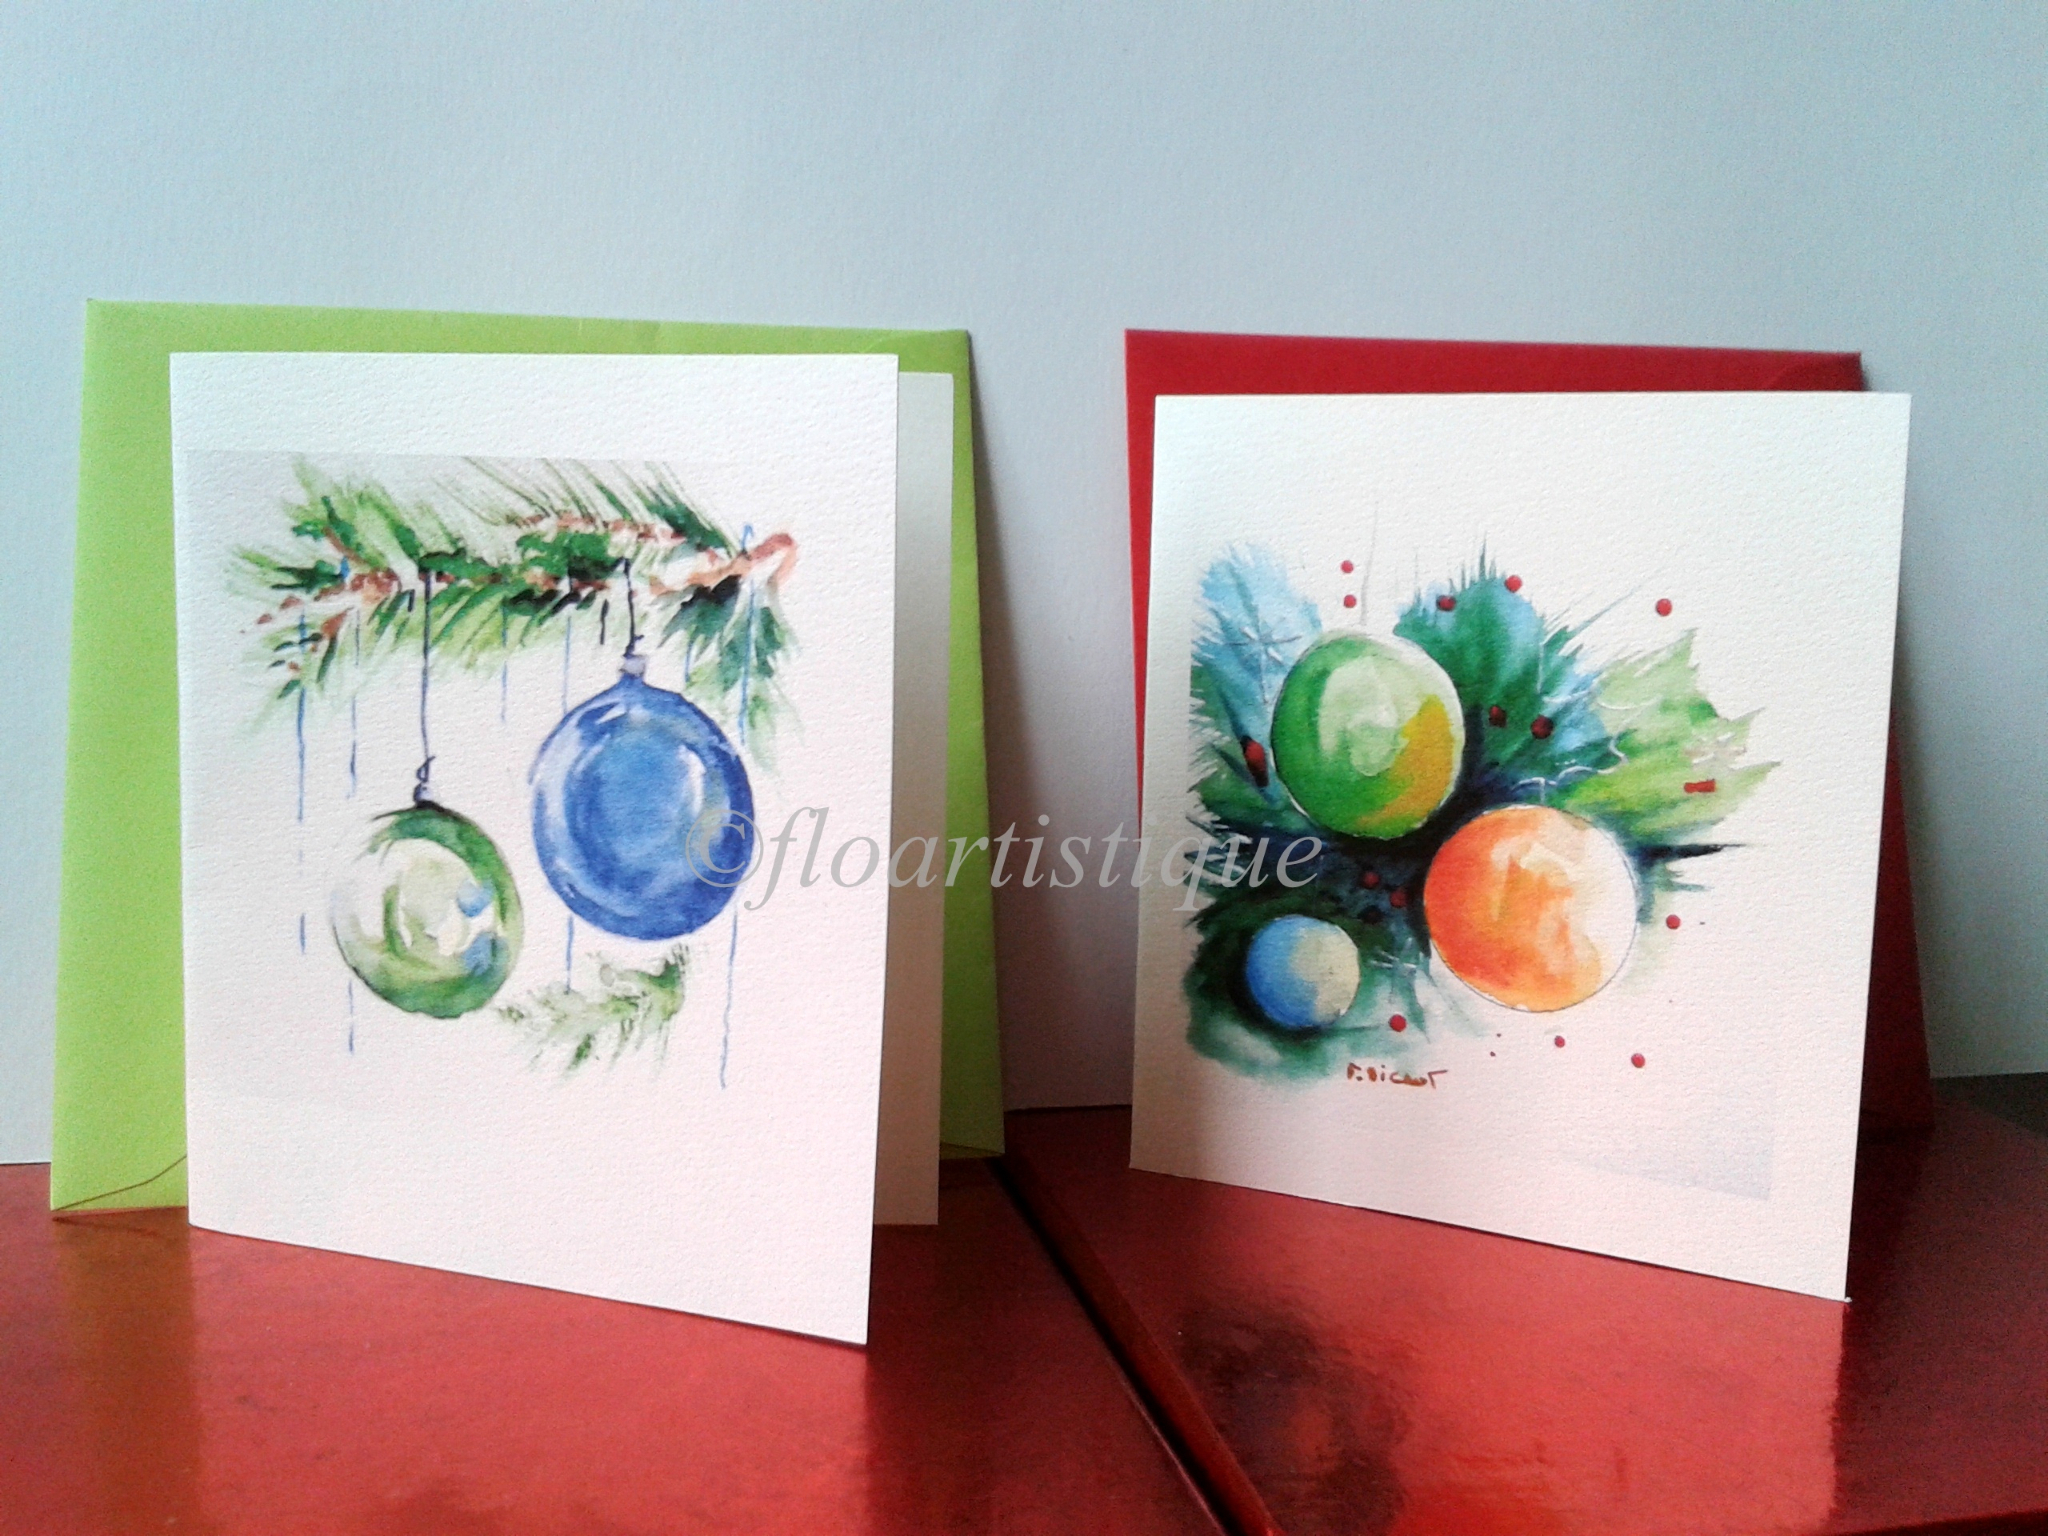 Carte de Voeux Joyeux Noël et Bonne Année Voeux aquarelle